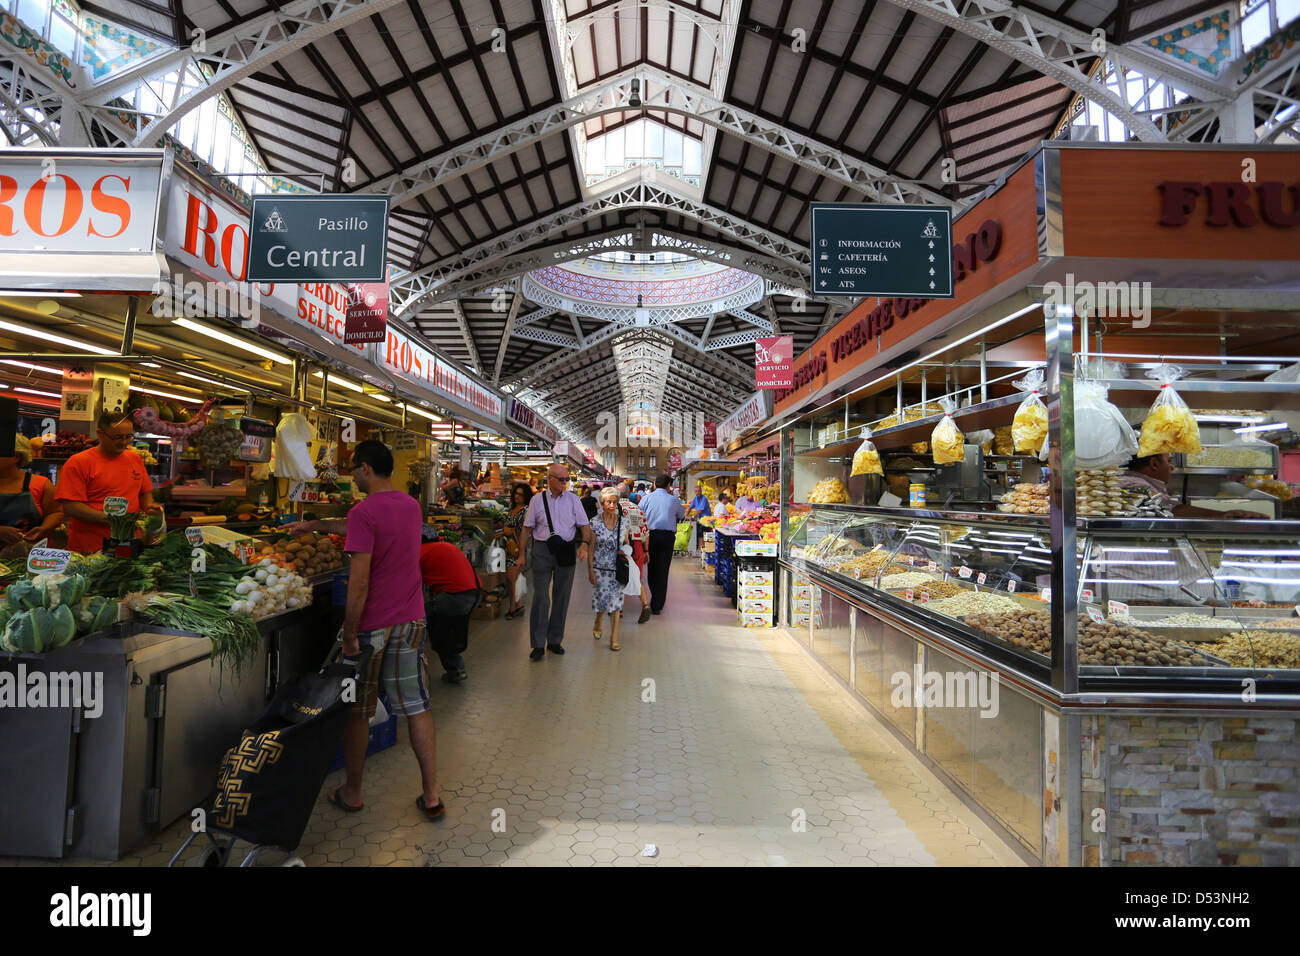 Valencia Central Market, Spain Stock Photo